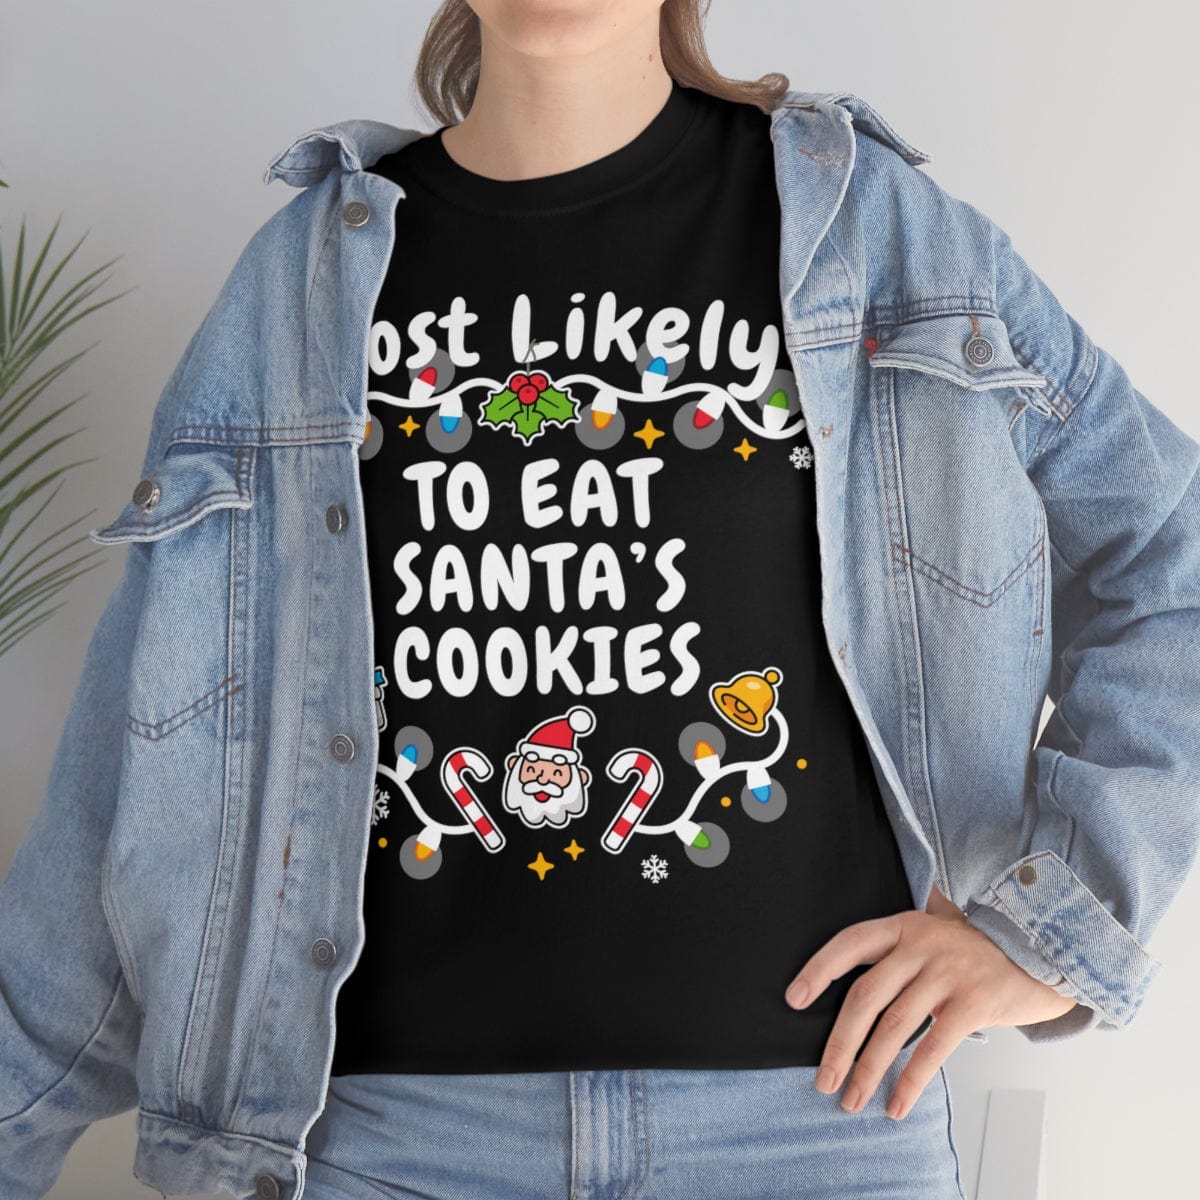 TO EAT SANTA’S COOKIES